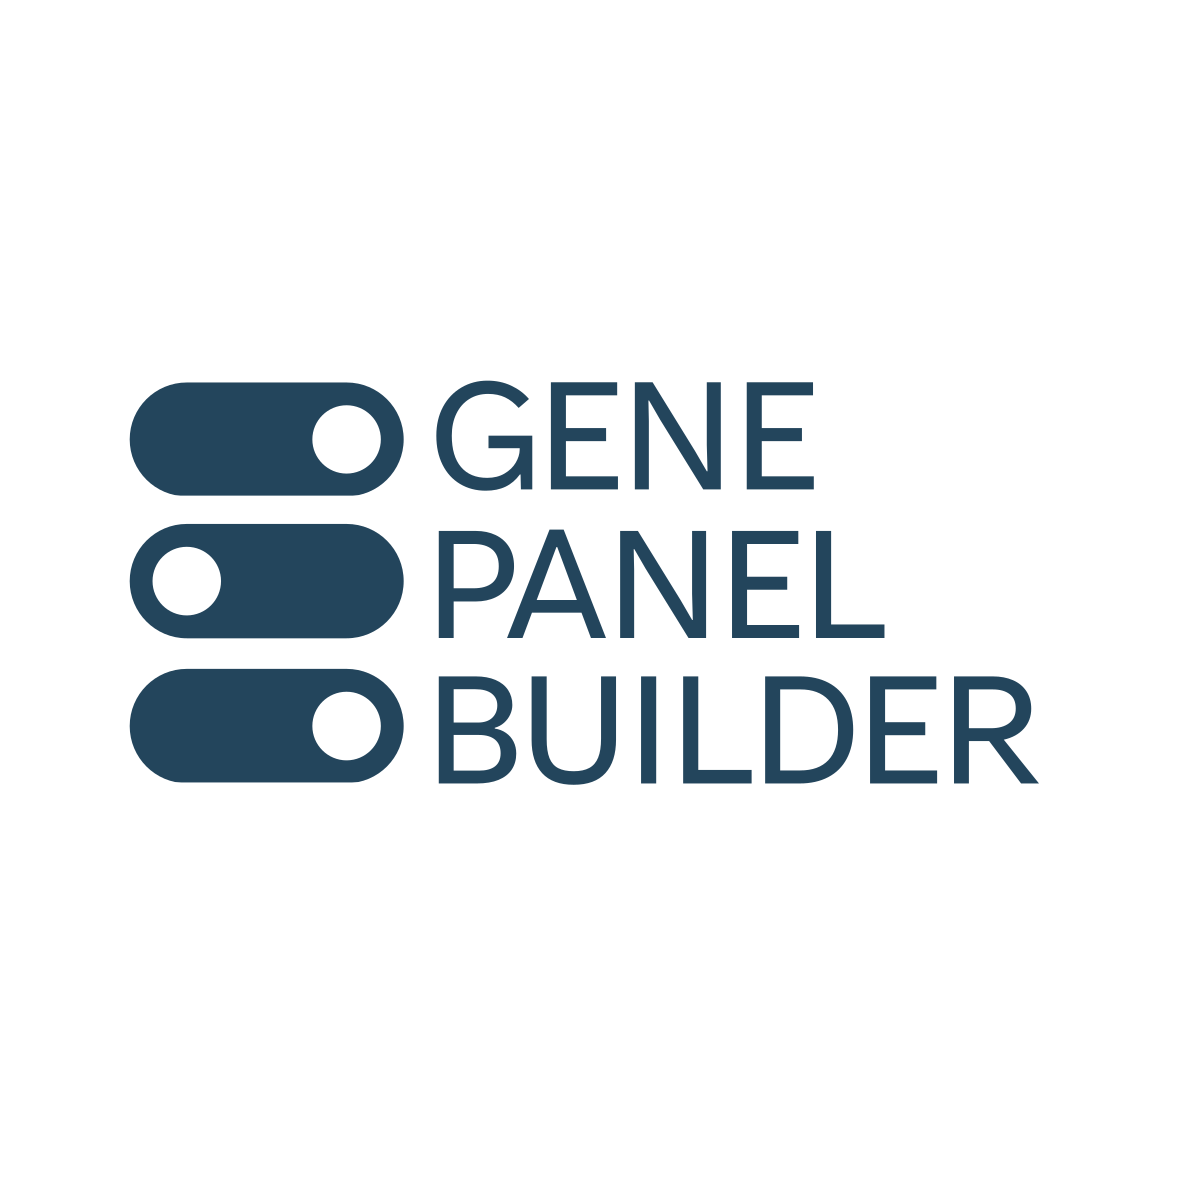 Gene panel builder logo